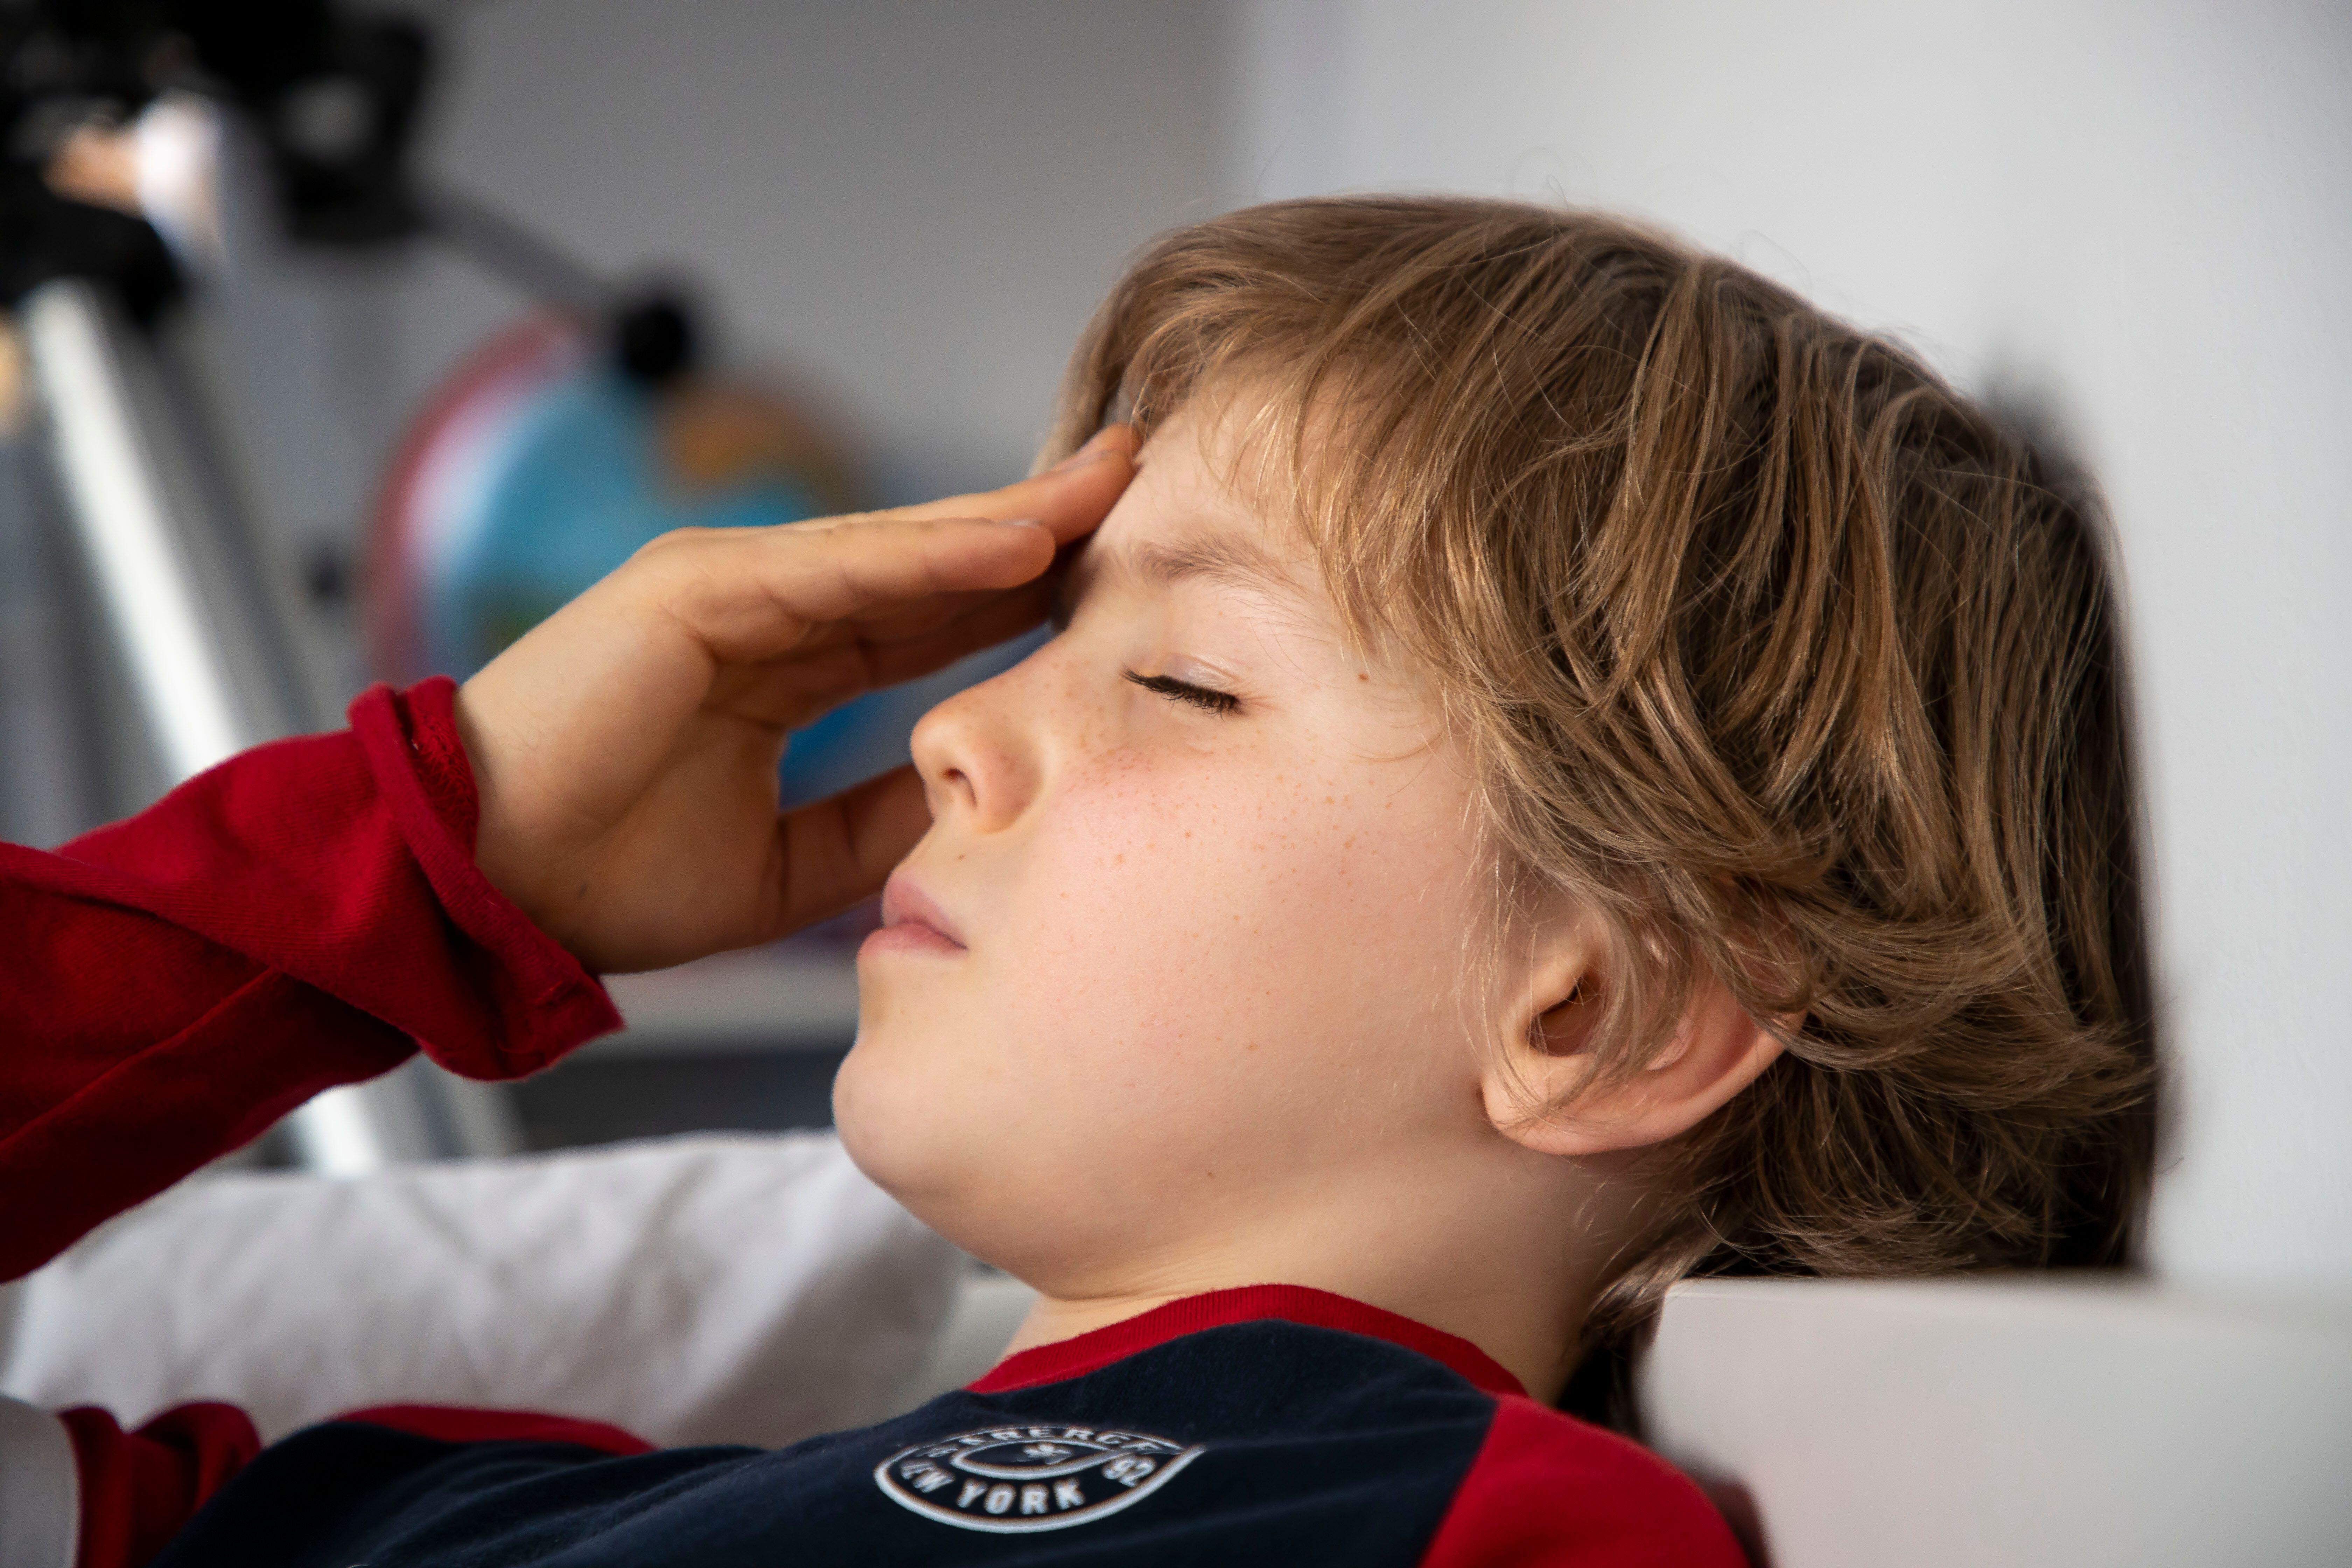 Child with a painful headache (Alamy/PA)